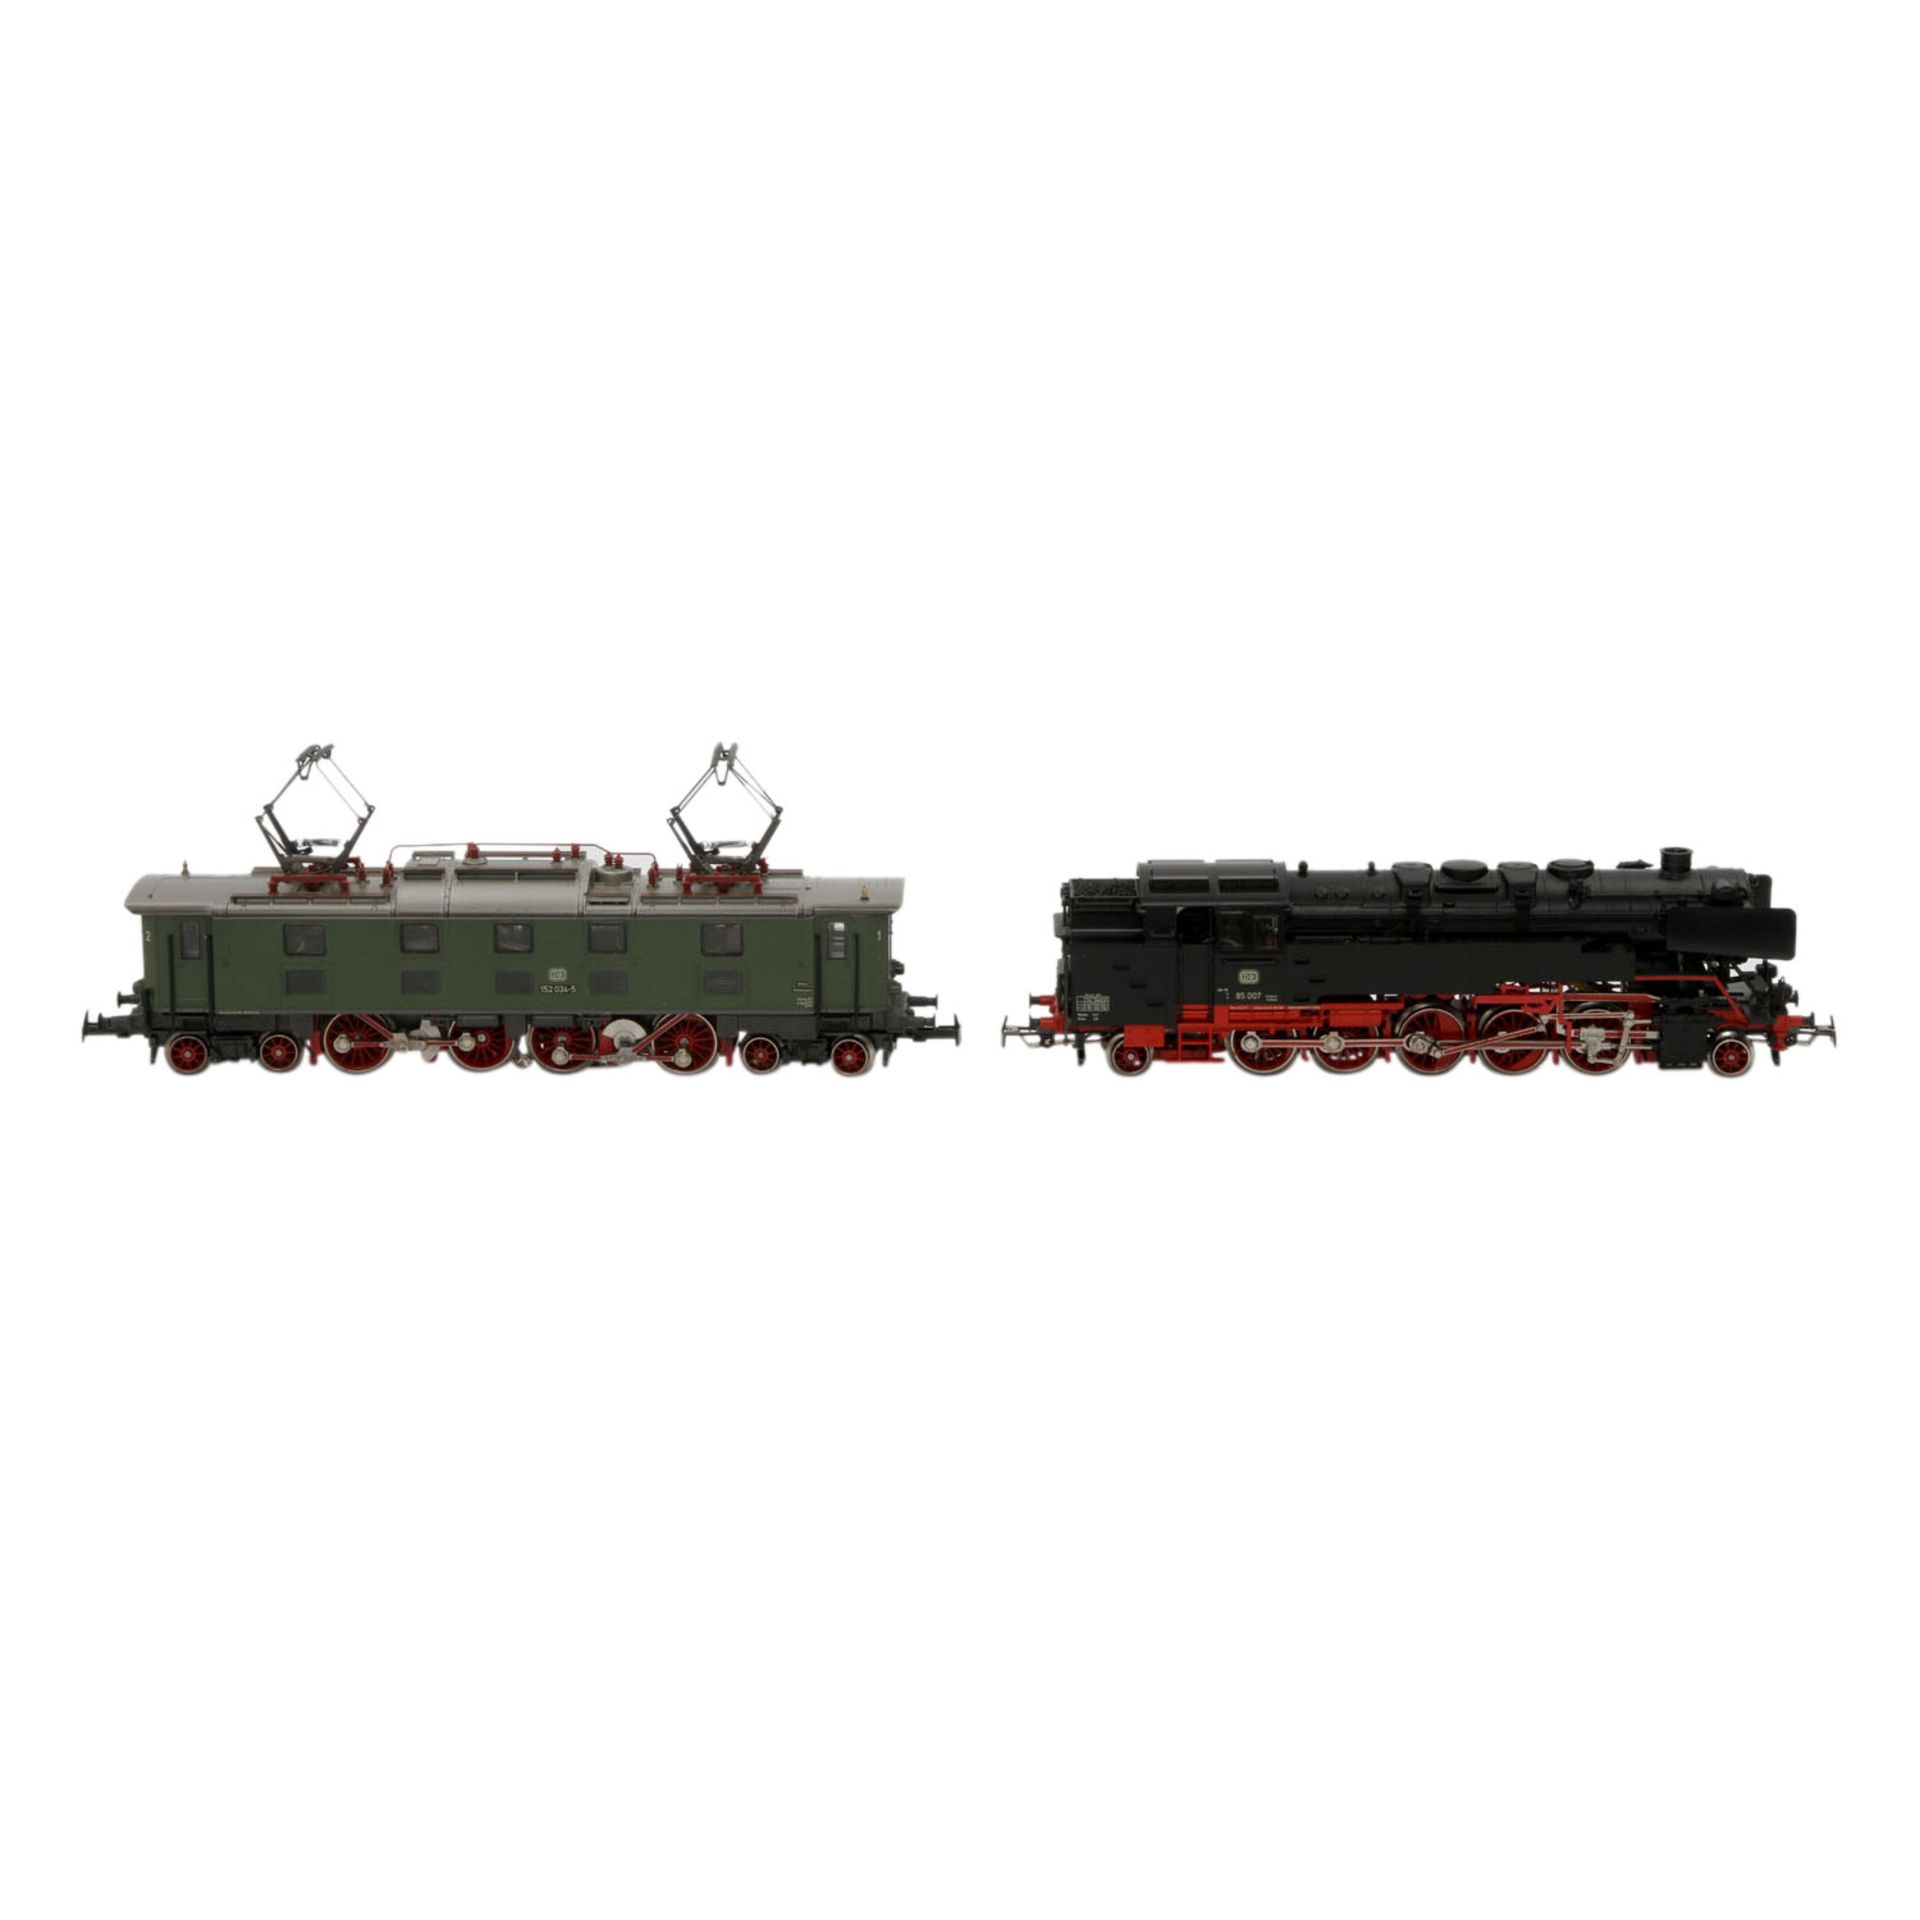 MÄRKLIN zwei Loks 3309/3366, Spur H0,Kunststoff-Gehäuse, Guss-Kessel, bestehend aus Tenderlok - Image 4 of 7